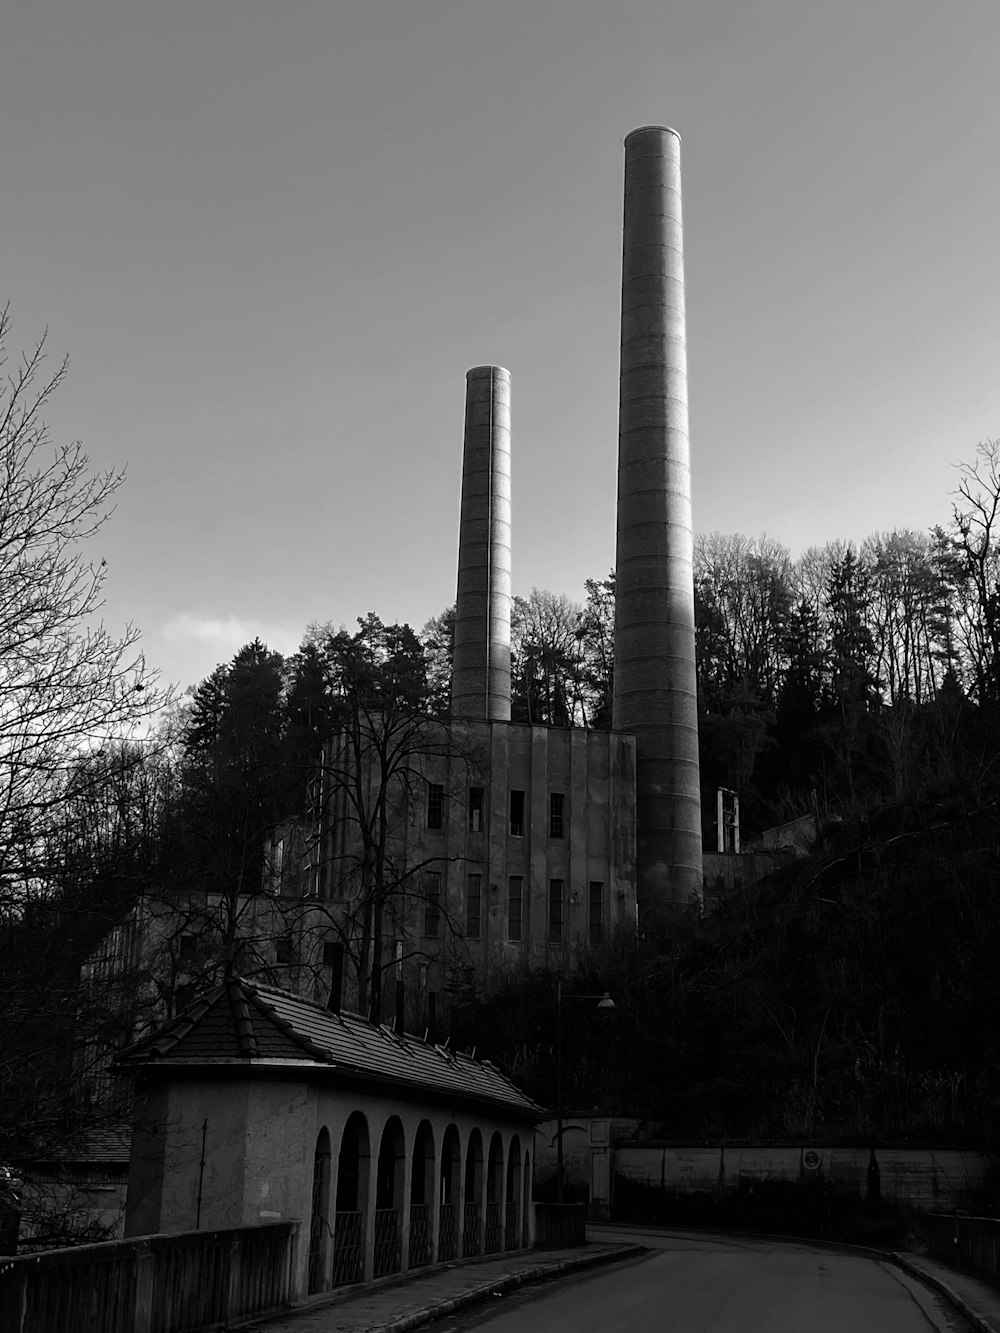 Una foto en blanco y negro de dos chimeneas